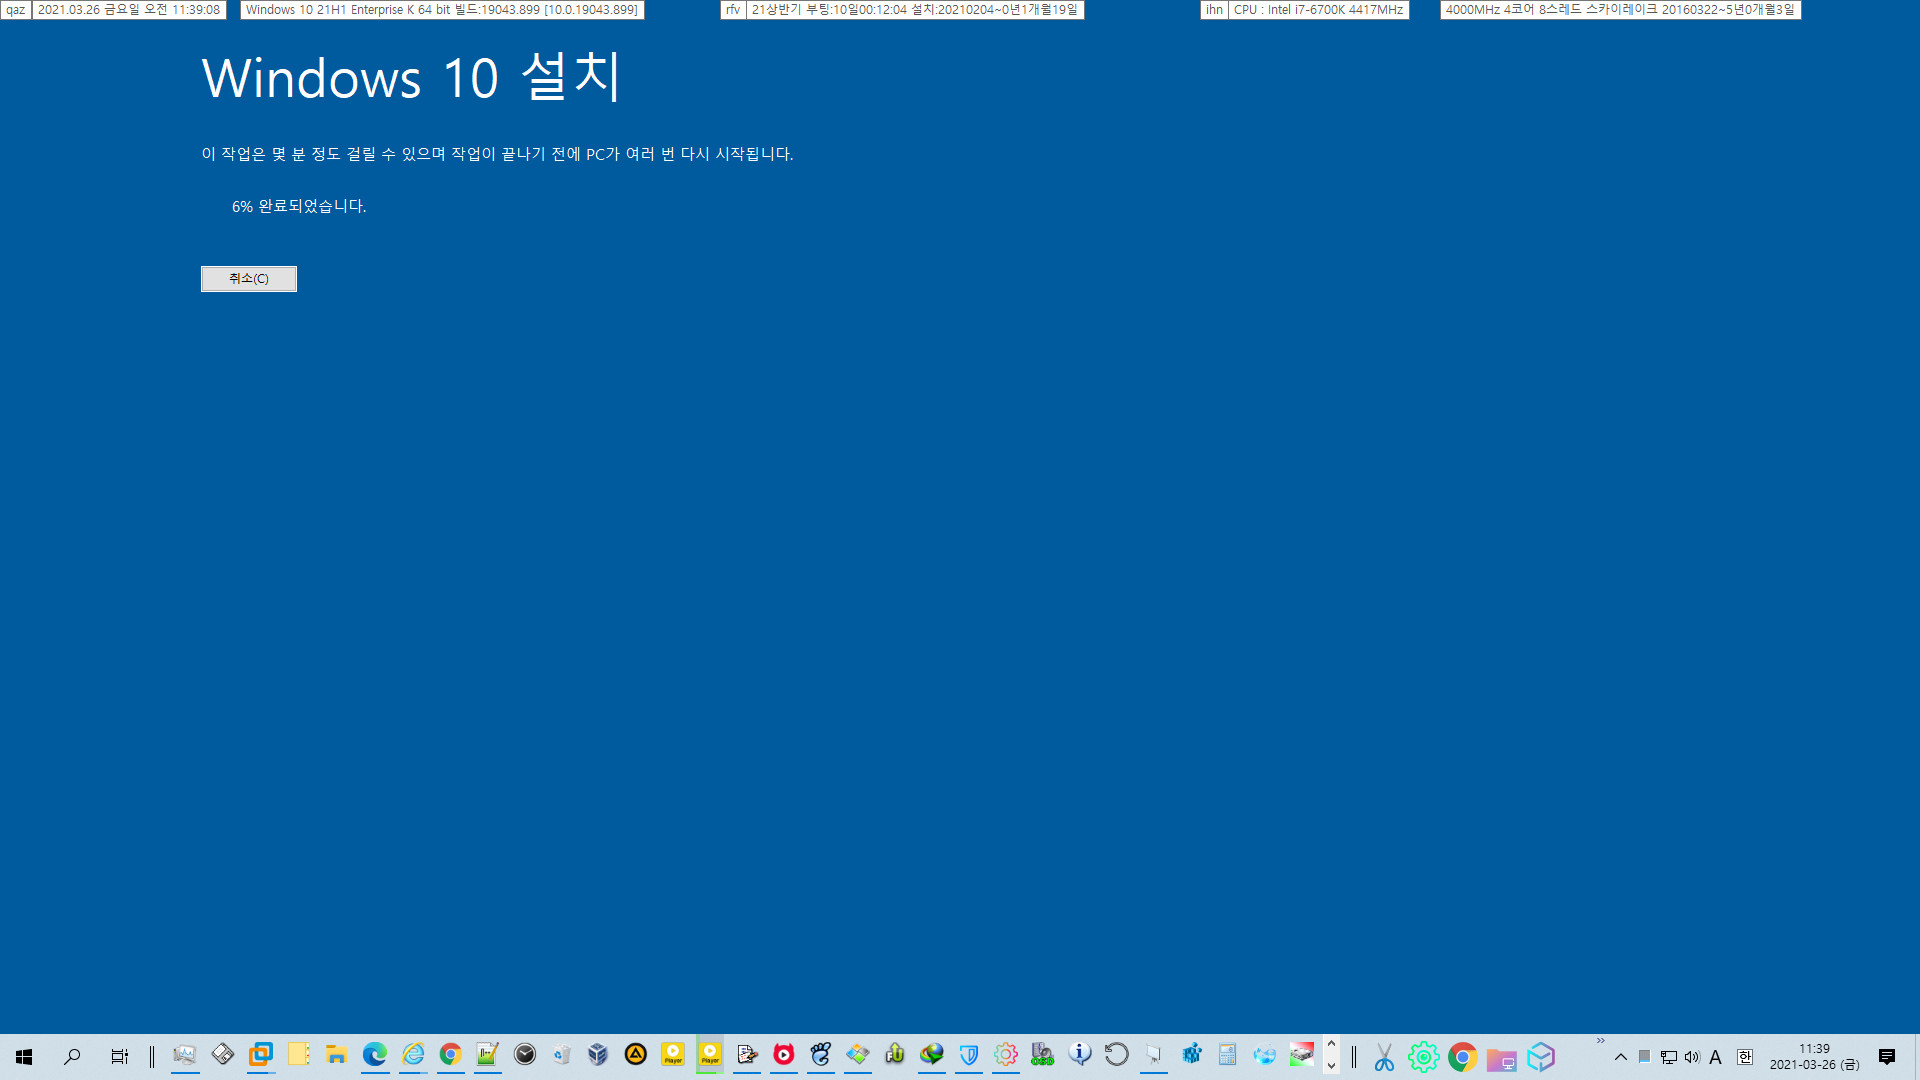 2021-03-26 베타 업데이트 - Windows 10 버전 21H1, 빌드 19043.906 - 공용 누적 업데이트 KB5000842 가 실컴에 설치되지 않아서 이런 이유로는 처음으로 통합본으로 업그레이드 방식으로 윈도우를 설치했습니다 2021-03-26_113908.jpg